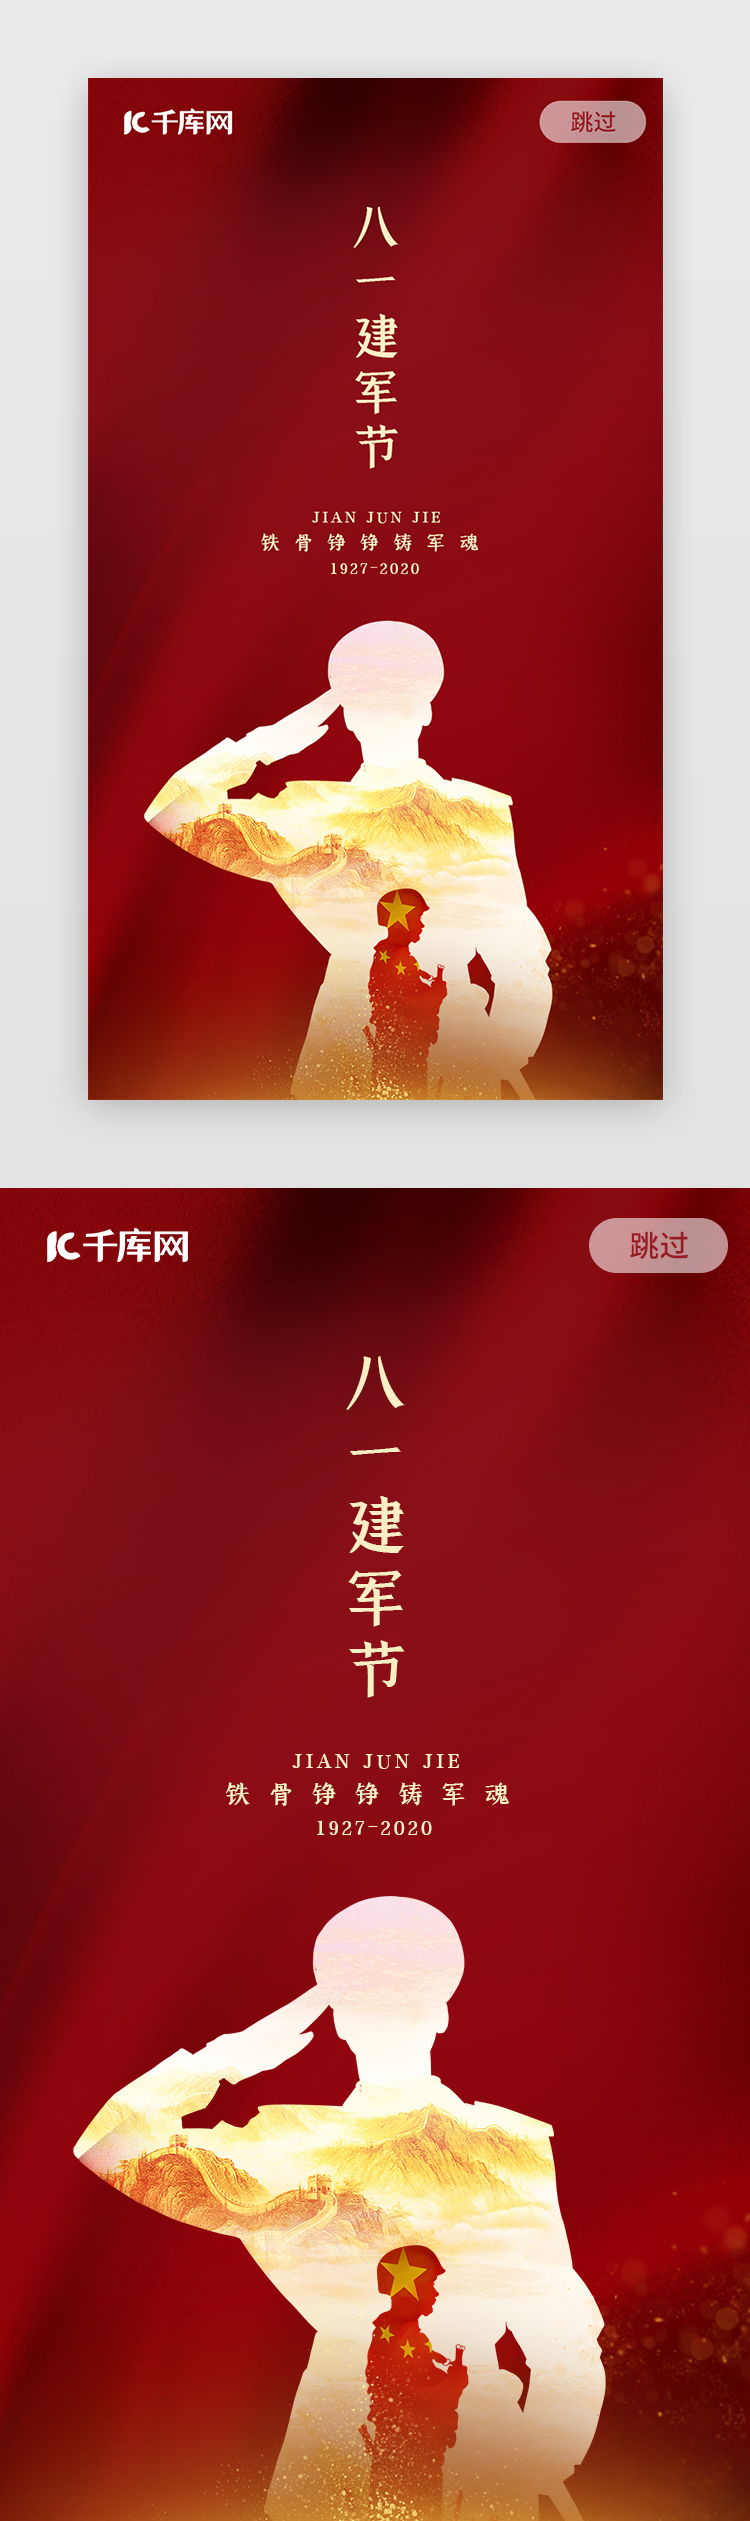 简约红色中国传统节日大气建军节闪屏启动页图片